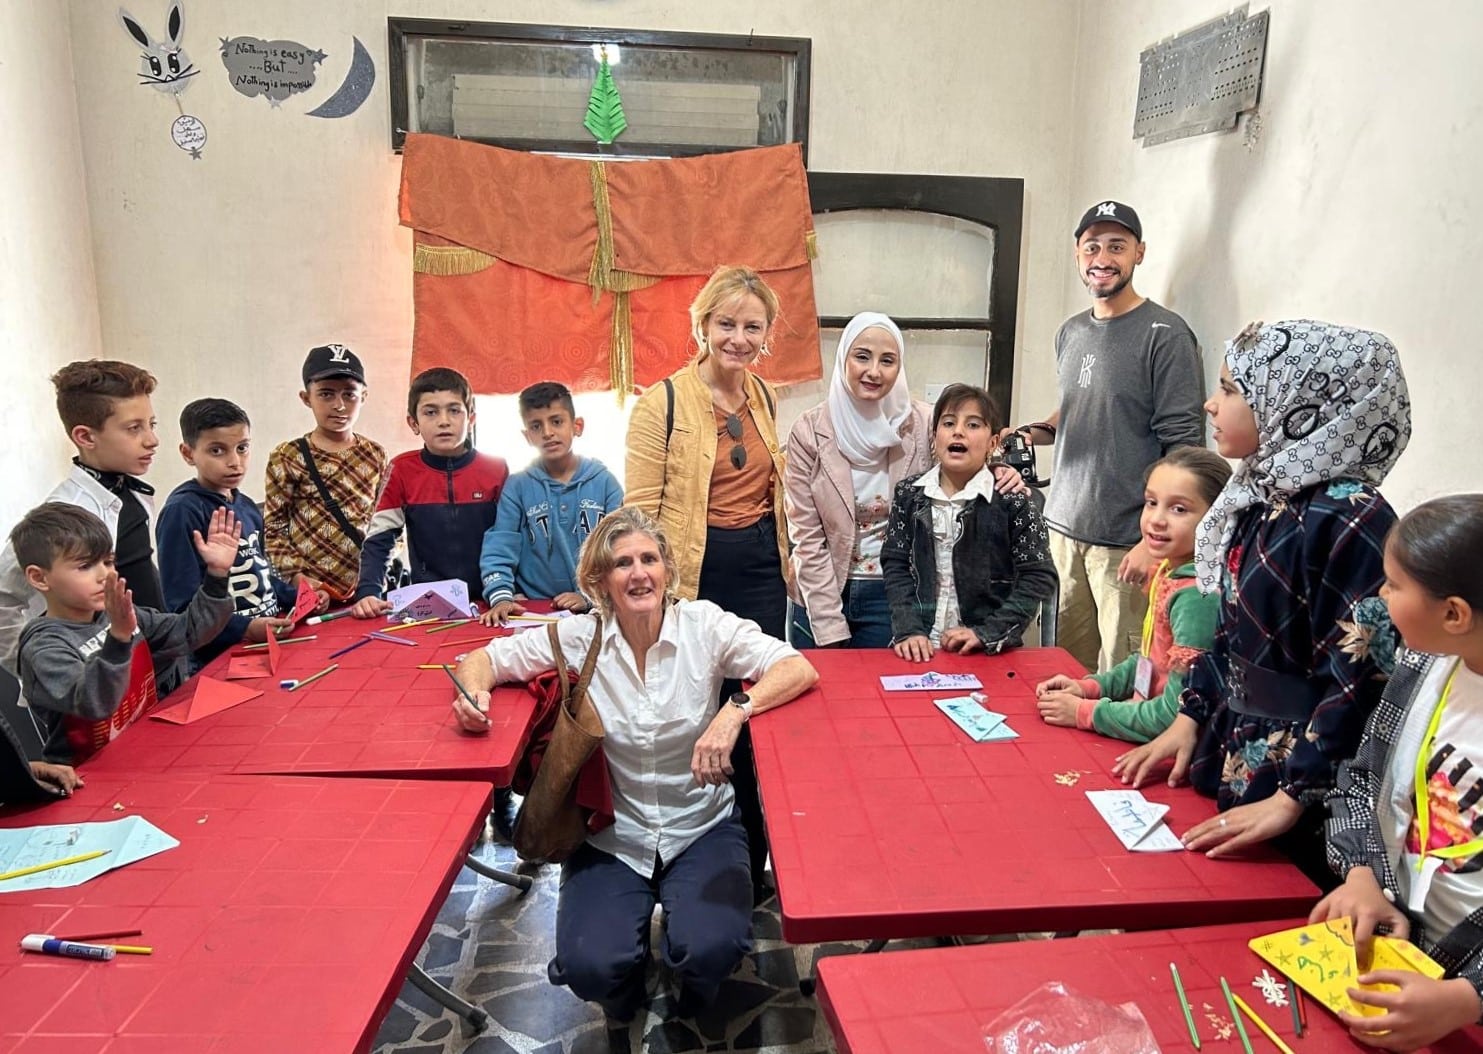 Ana und Gabriella zusammen mit den Menschen und Kindern von Aleppo.